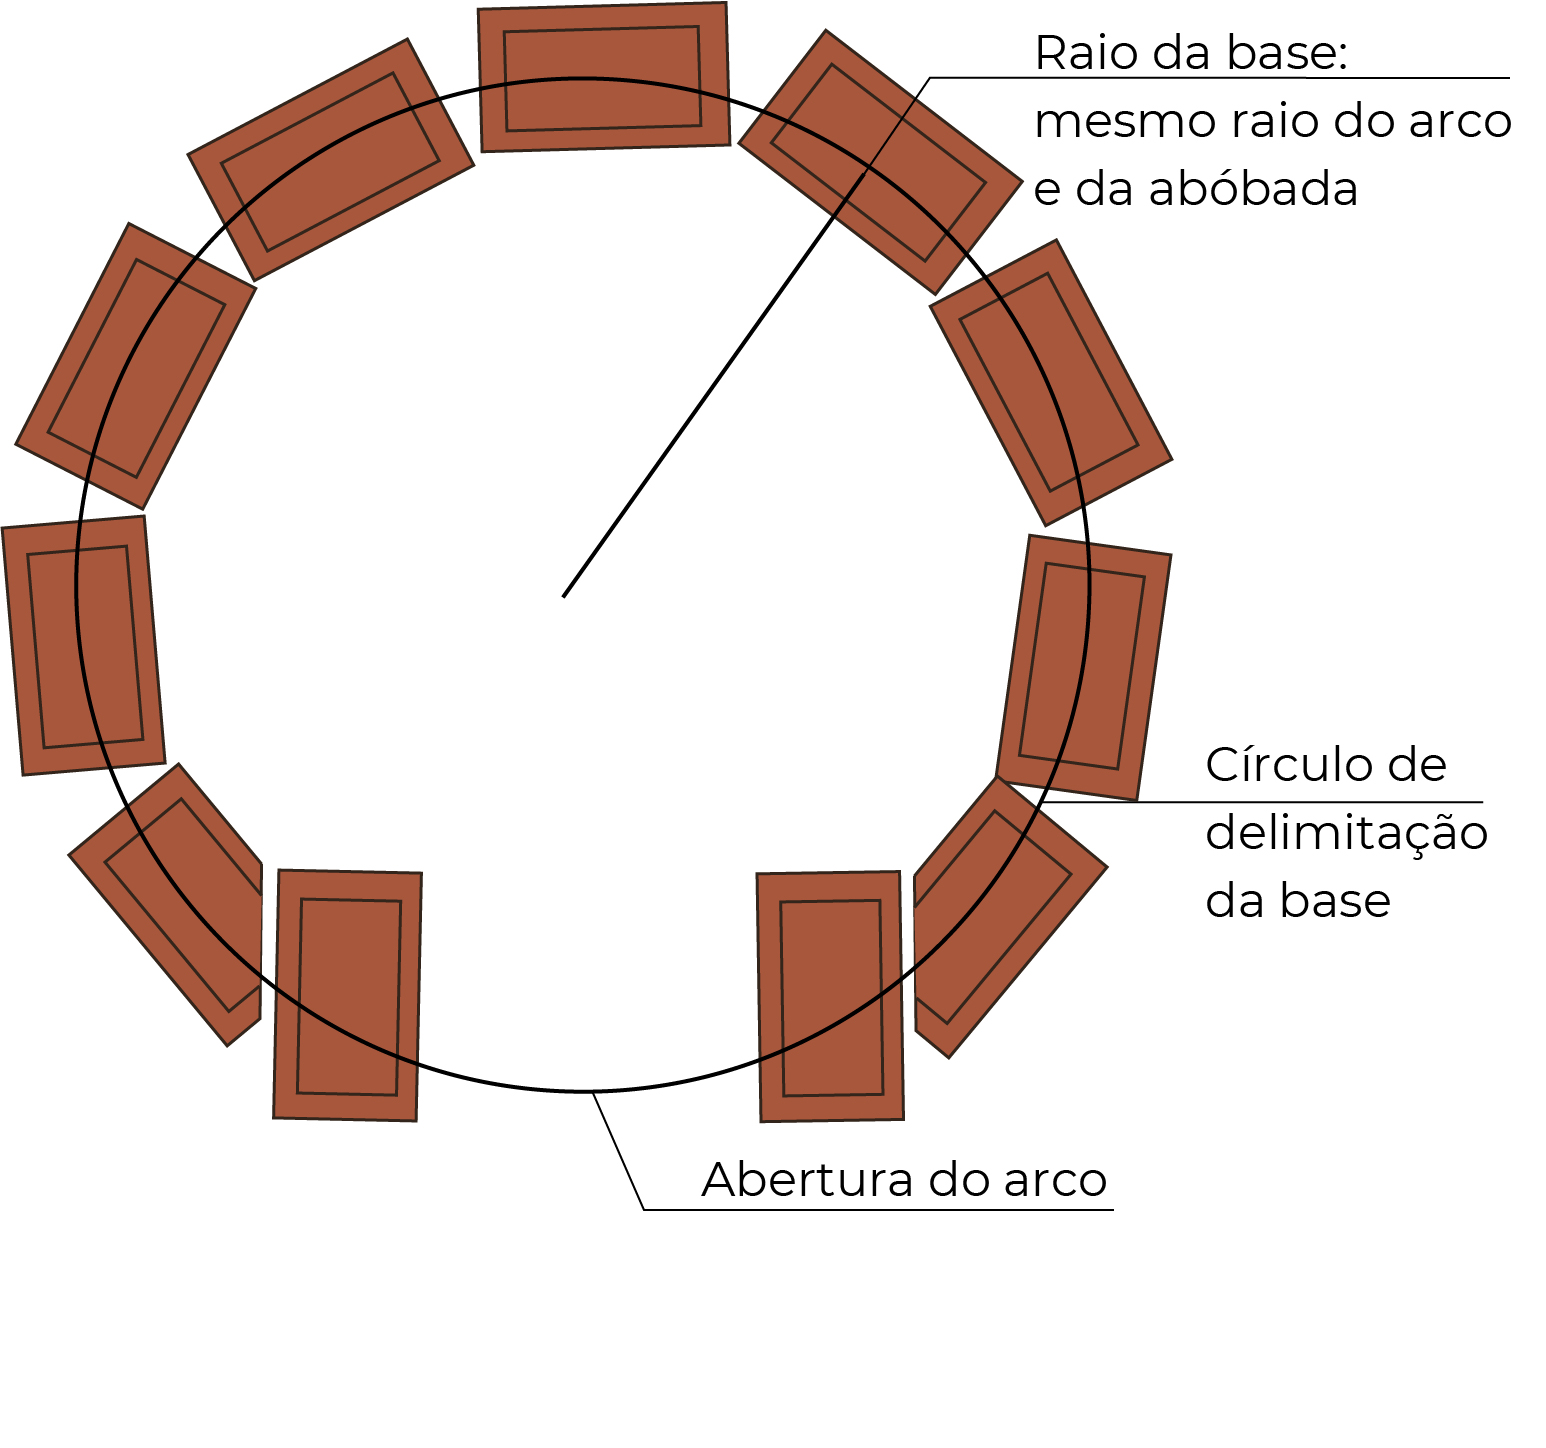 Desenho esquemático mostra a base de um forninho de barro com nove tijolos dispostos em círculo. Nele, está sinalizado que o raio da base deve ser o mesmo do arco e da abóbada, e estão representados também o círculo de delimitação da base, por uma linha, e a abertura do arco.